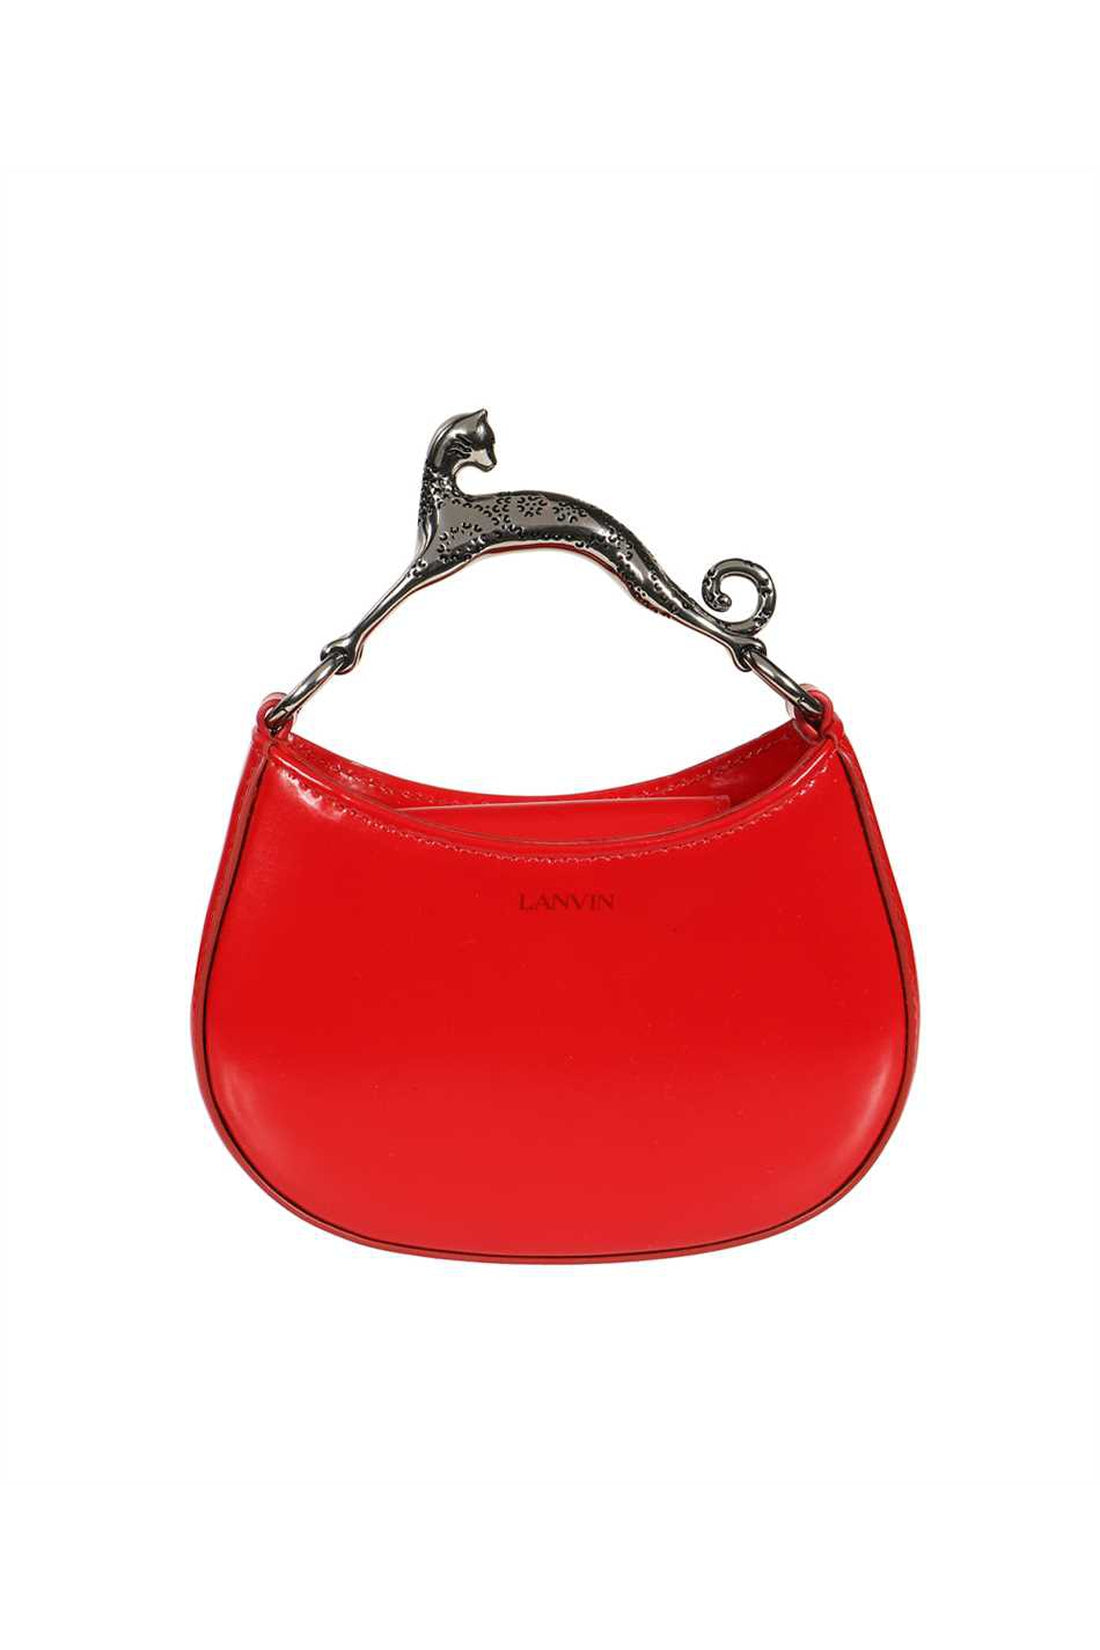 Lanvin-OUTLET-SALE-Leather handbag-ARCHIVIST